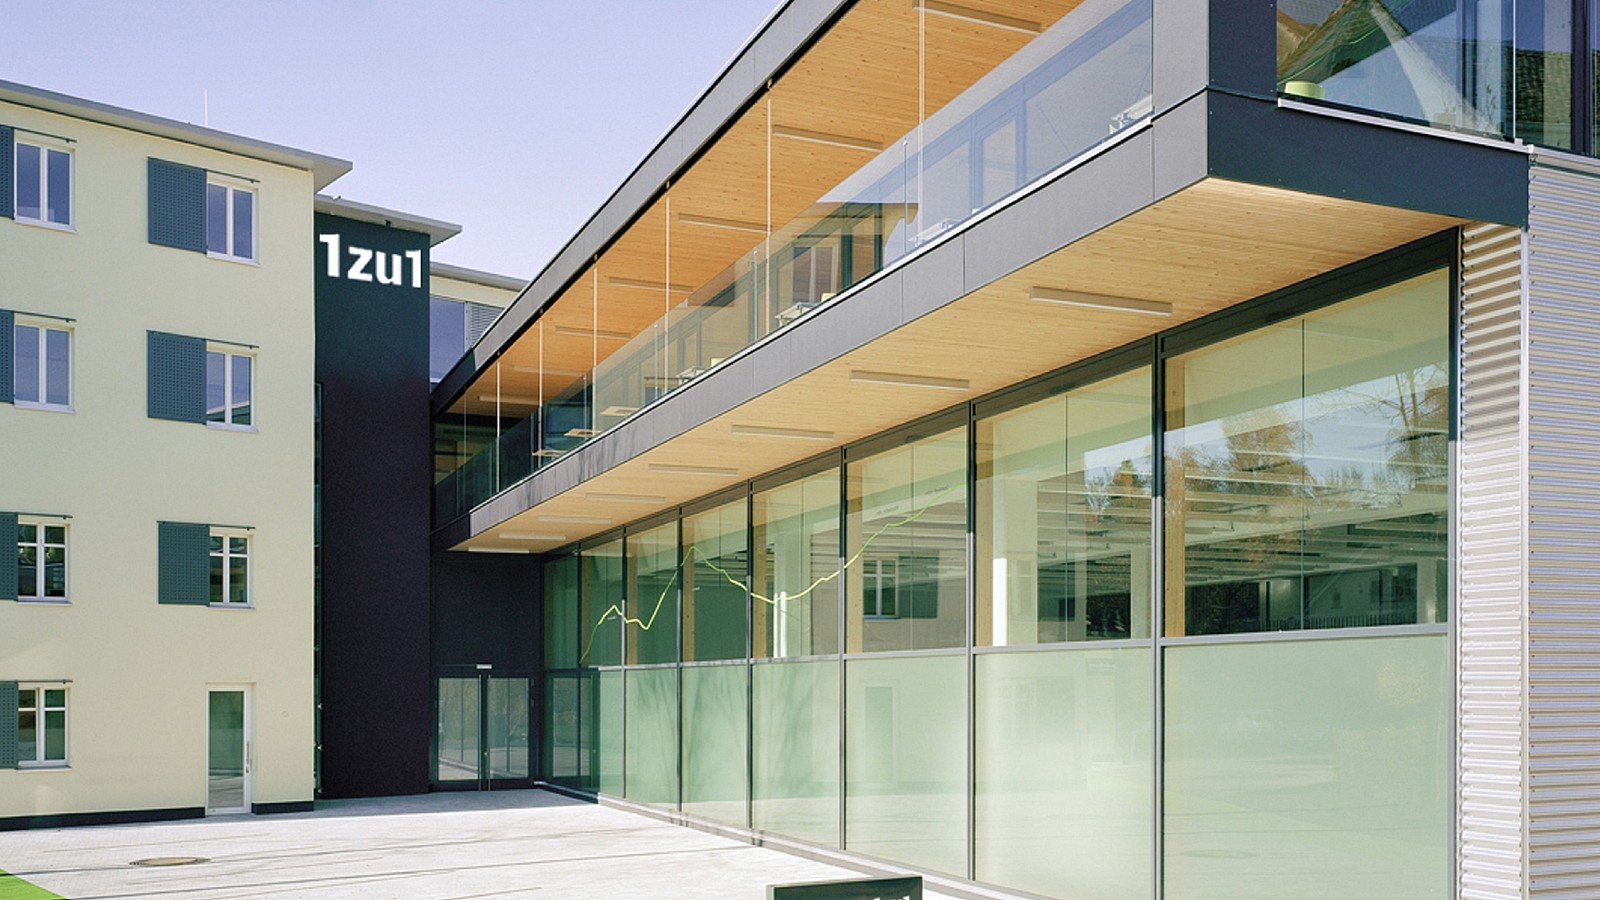 Das Bild zeigt die Frontansicht des 1zu1 Firmensitz in Dornbirn, Vorarlberg.